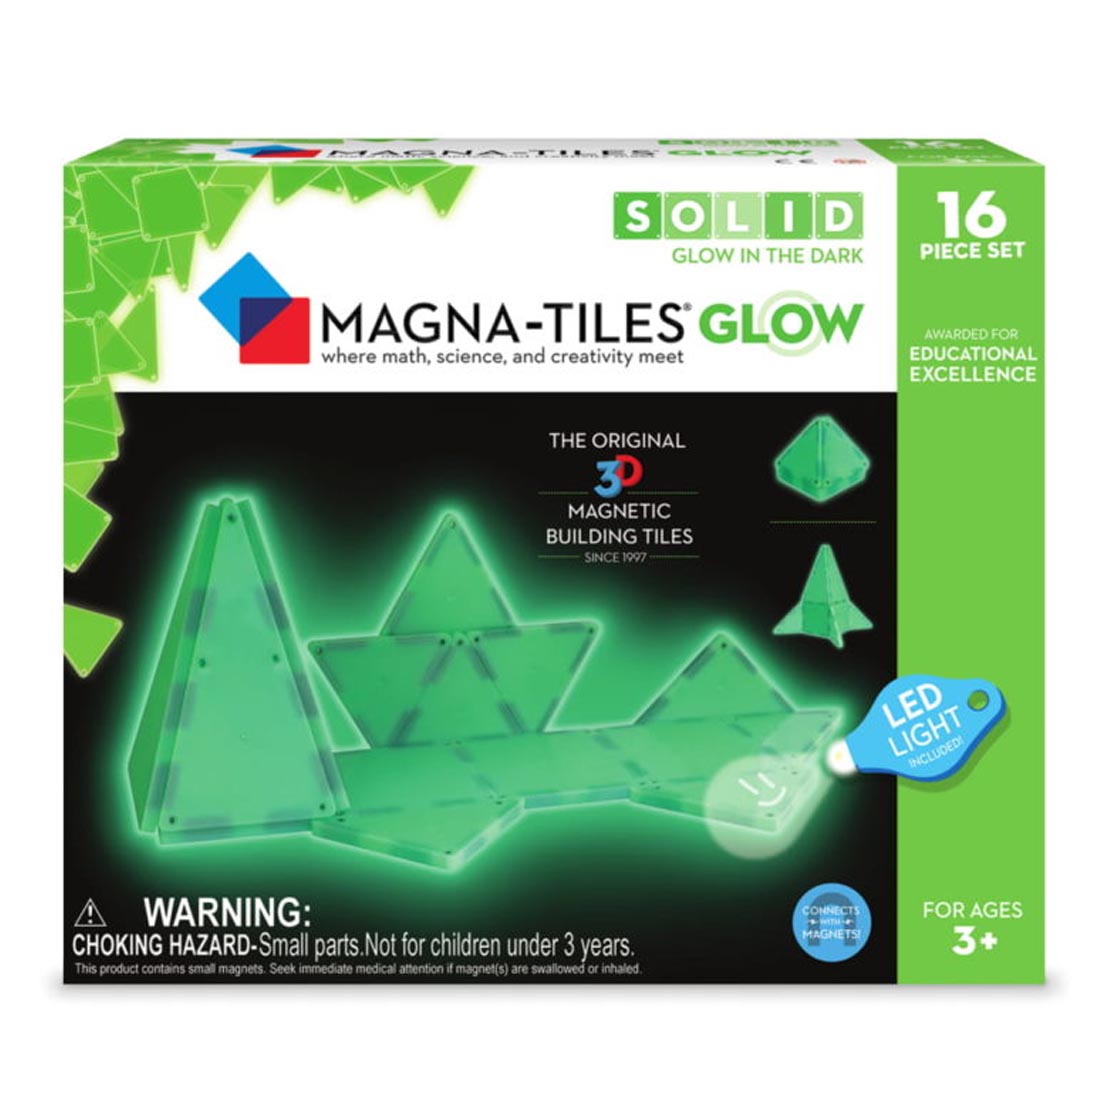 16-Piece Glow Magna-Tiles Set